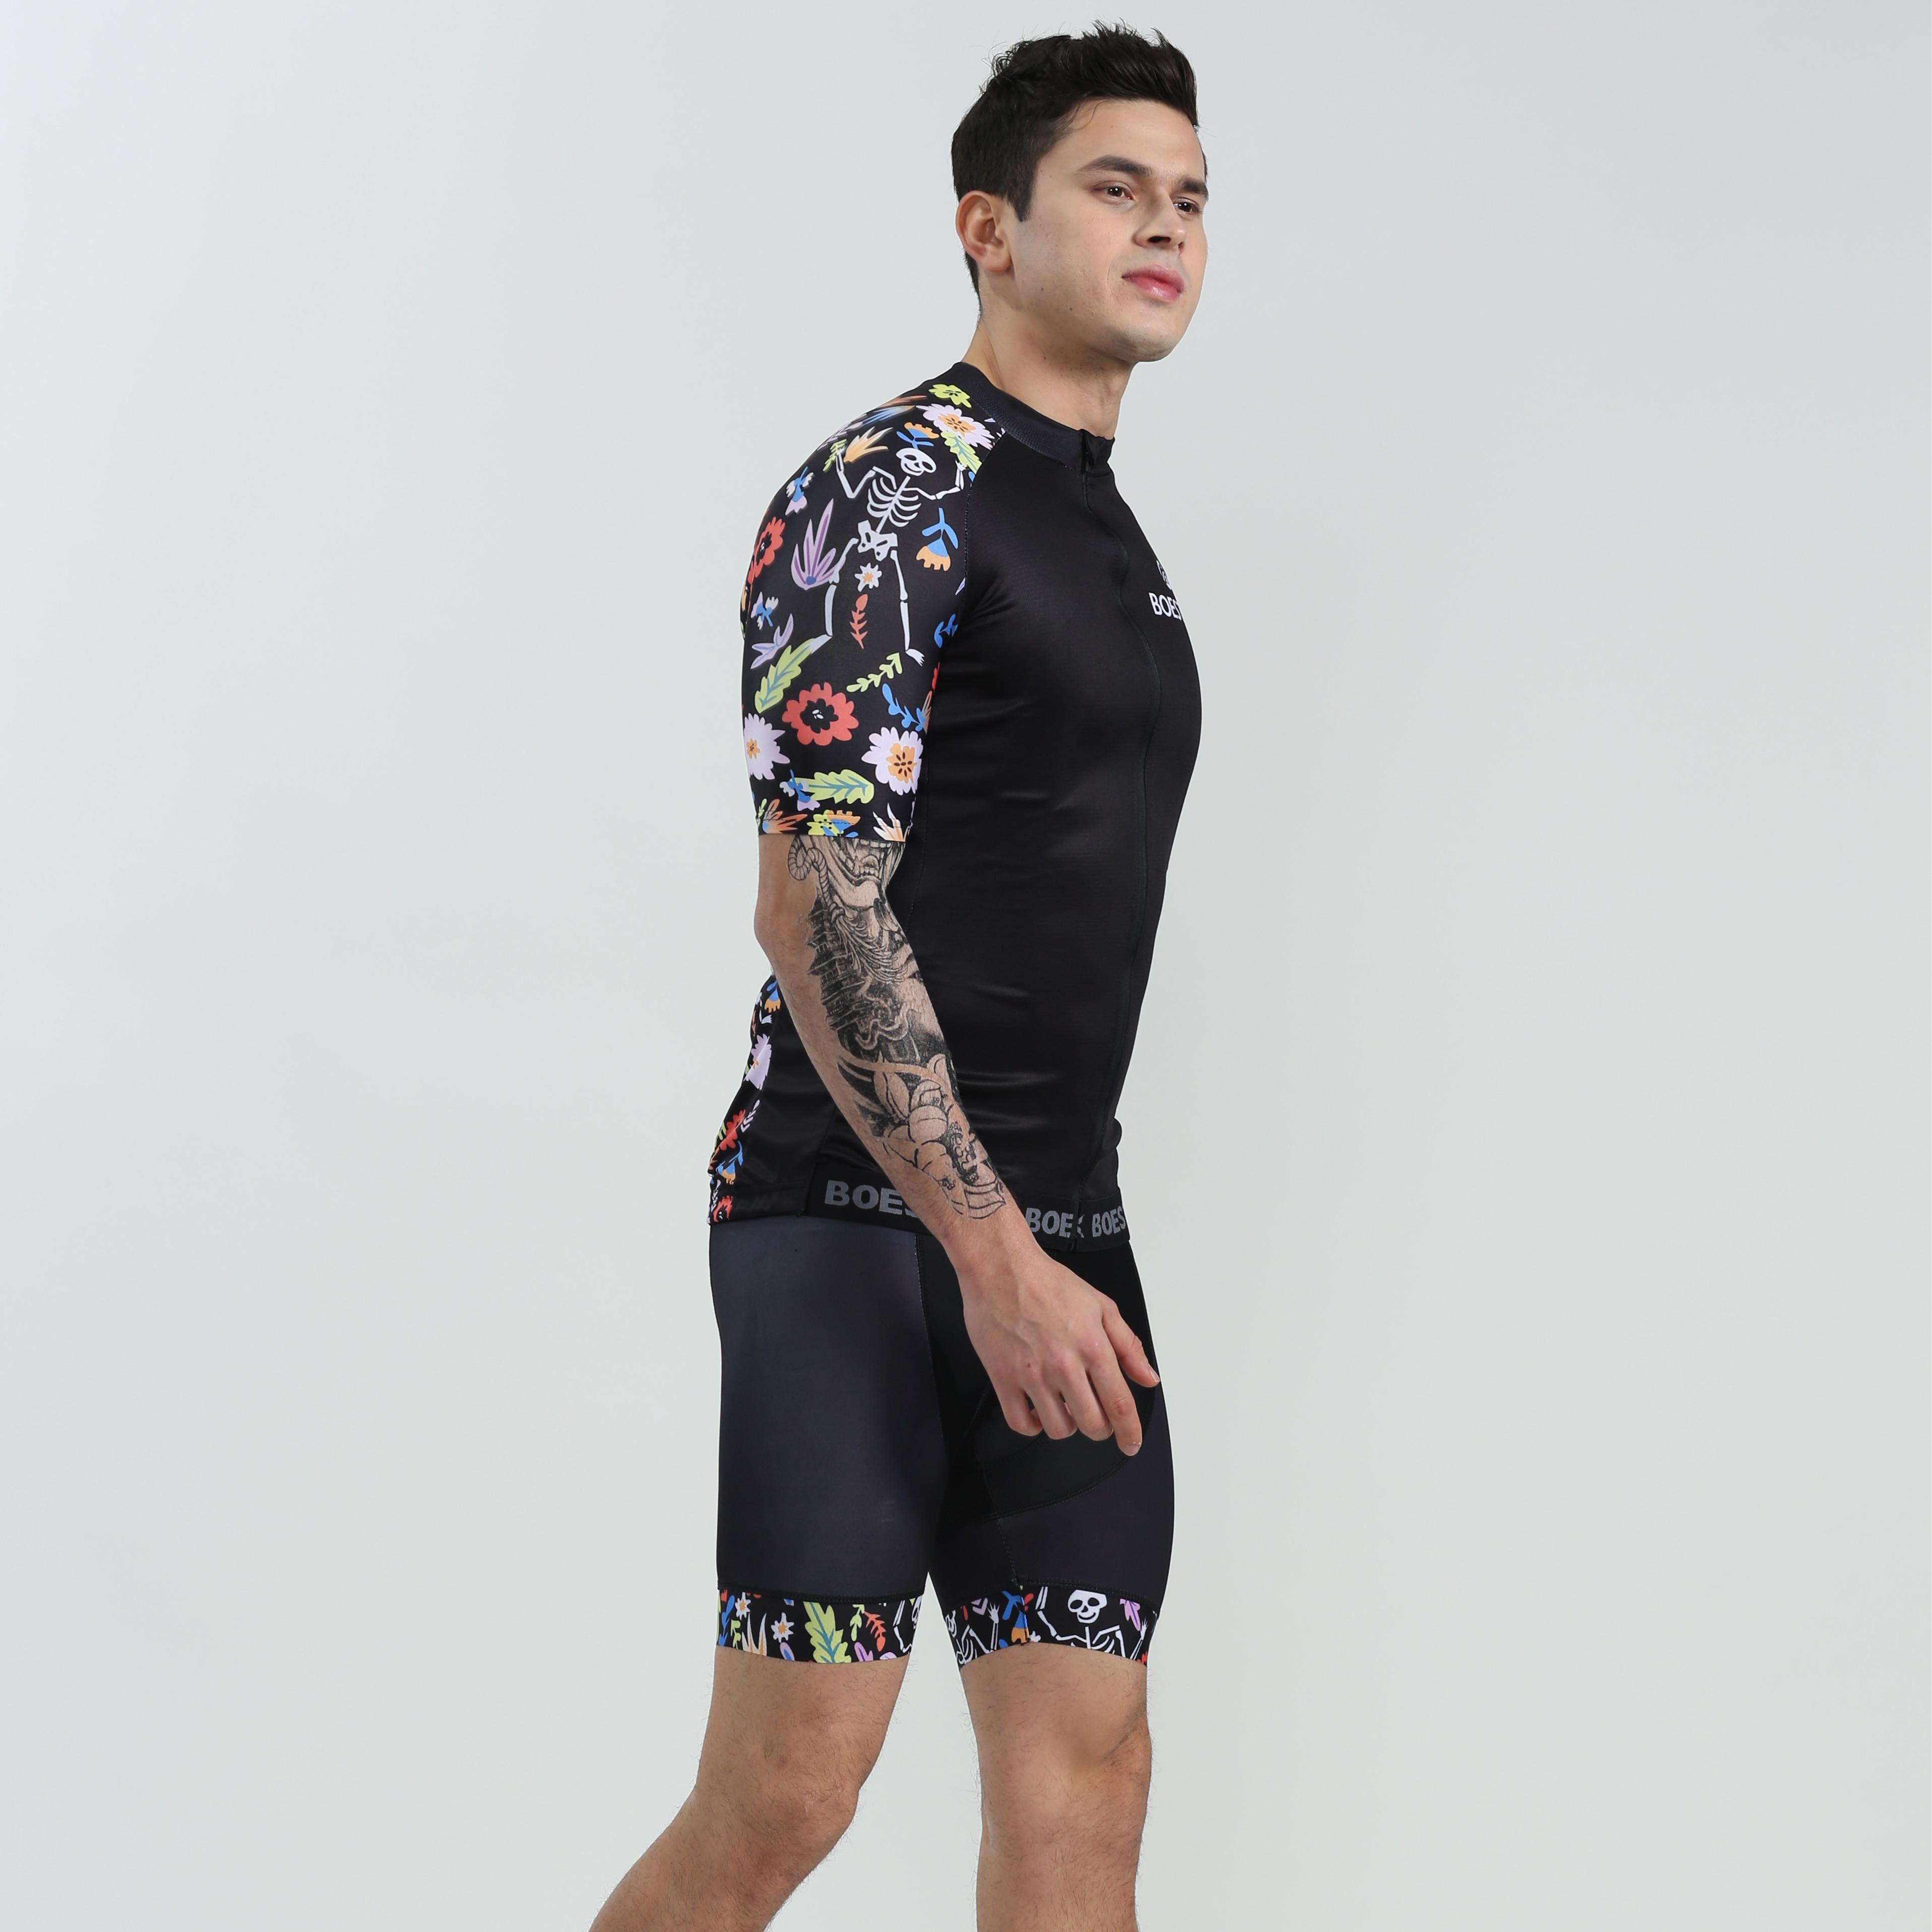 Изображение товара: Велосипедный тренировочный костюм BOESTALK, летний мужской комплект одежды для горного велоспорта, спортивный костюм для активного отдыха